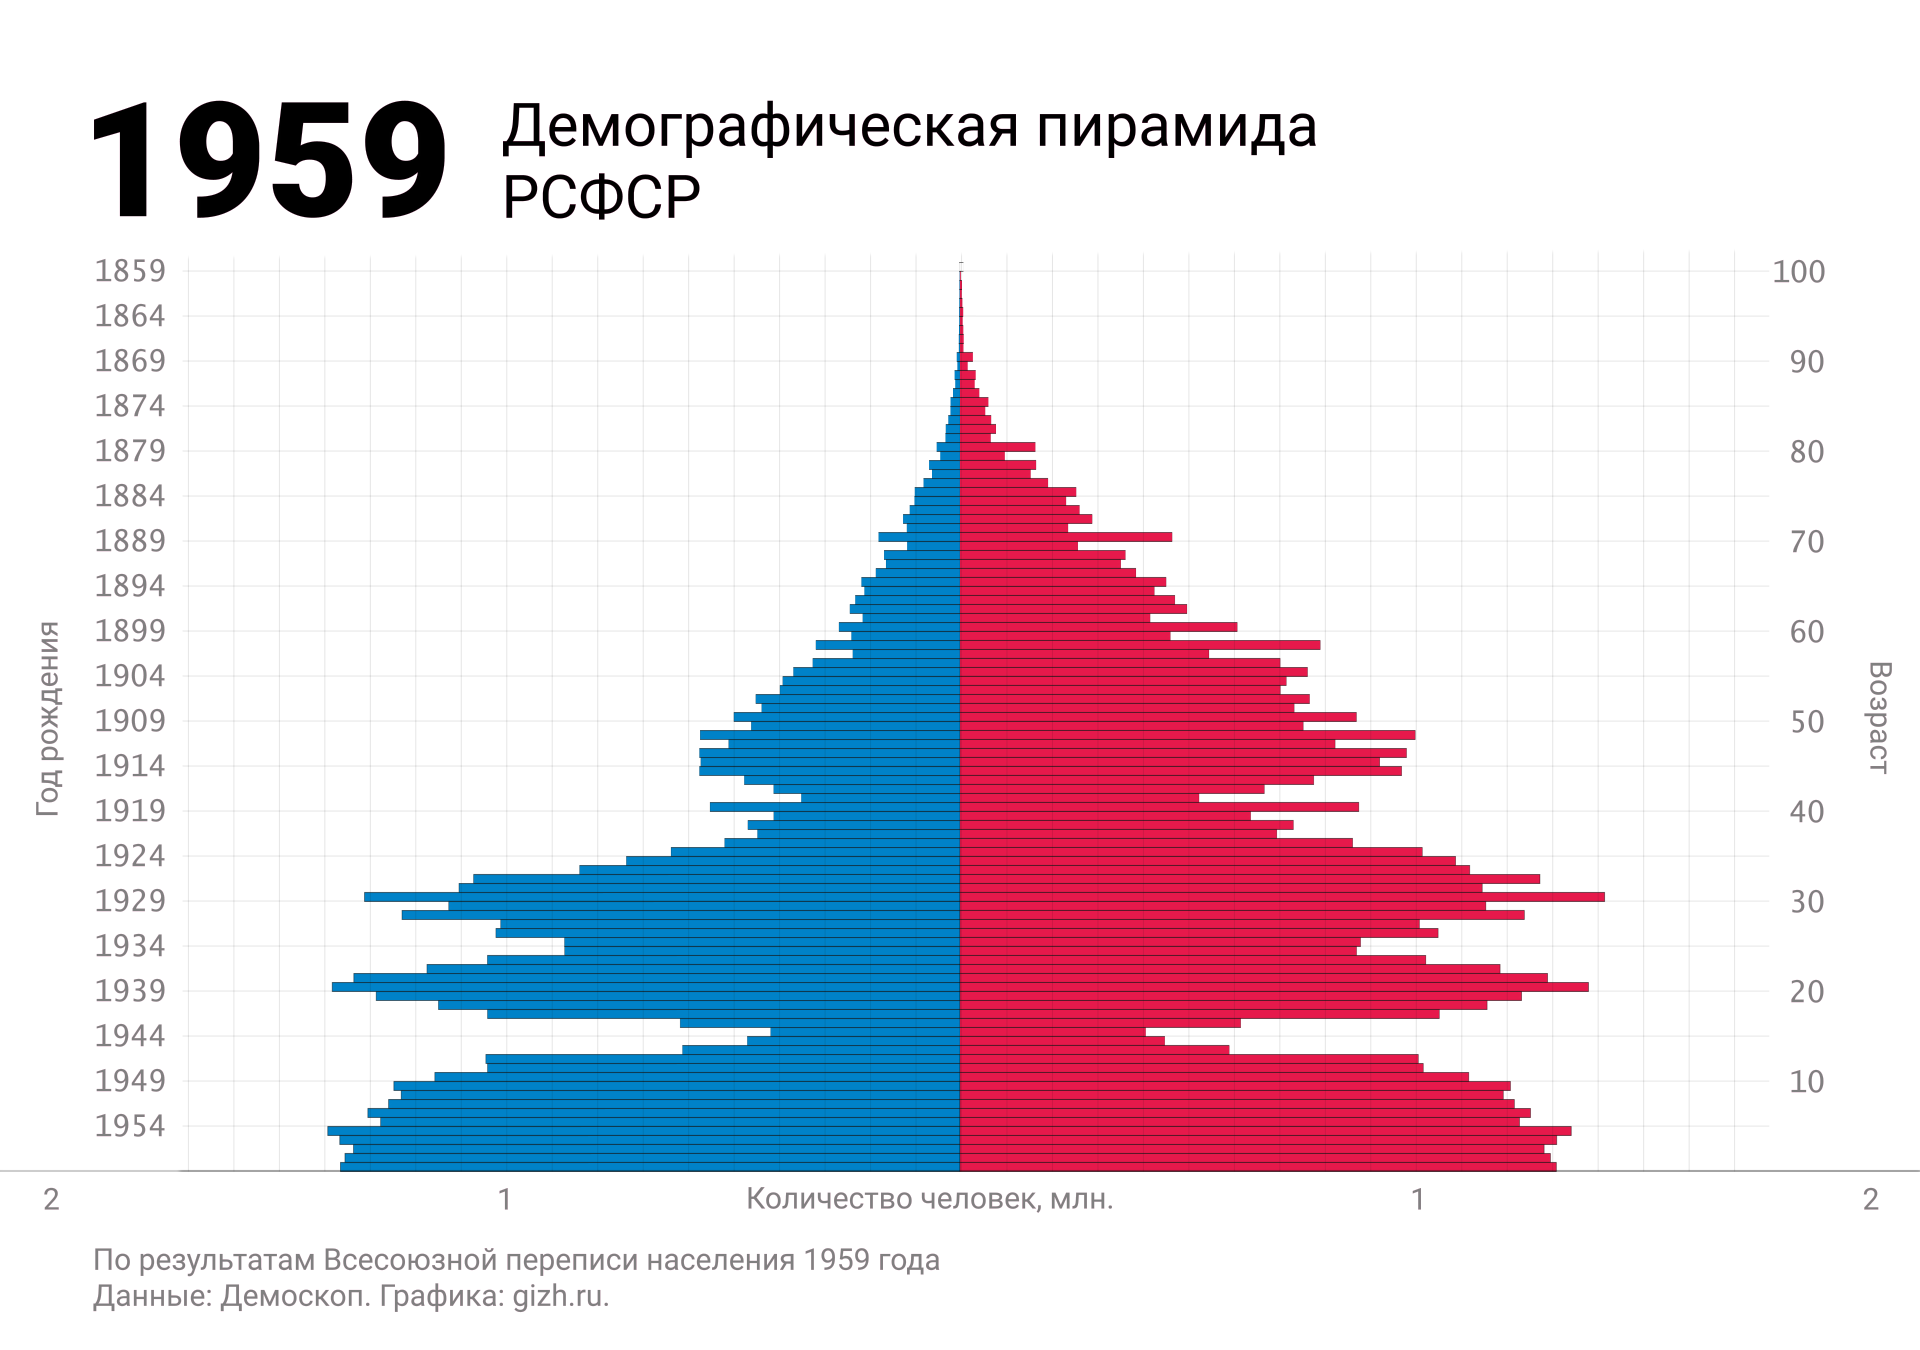 Демографическая (половозрастная) пирамида России (СССР, РСФСР) по переписи 1959